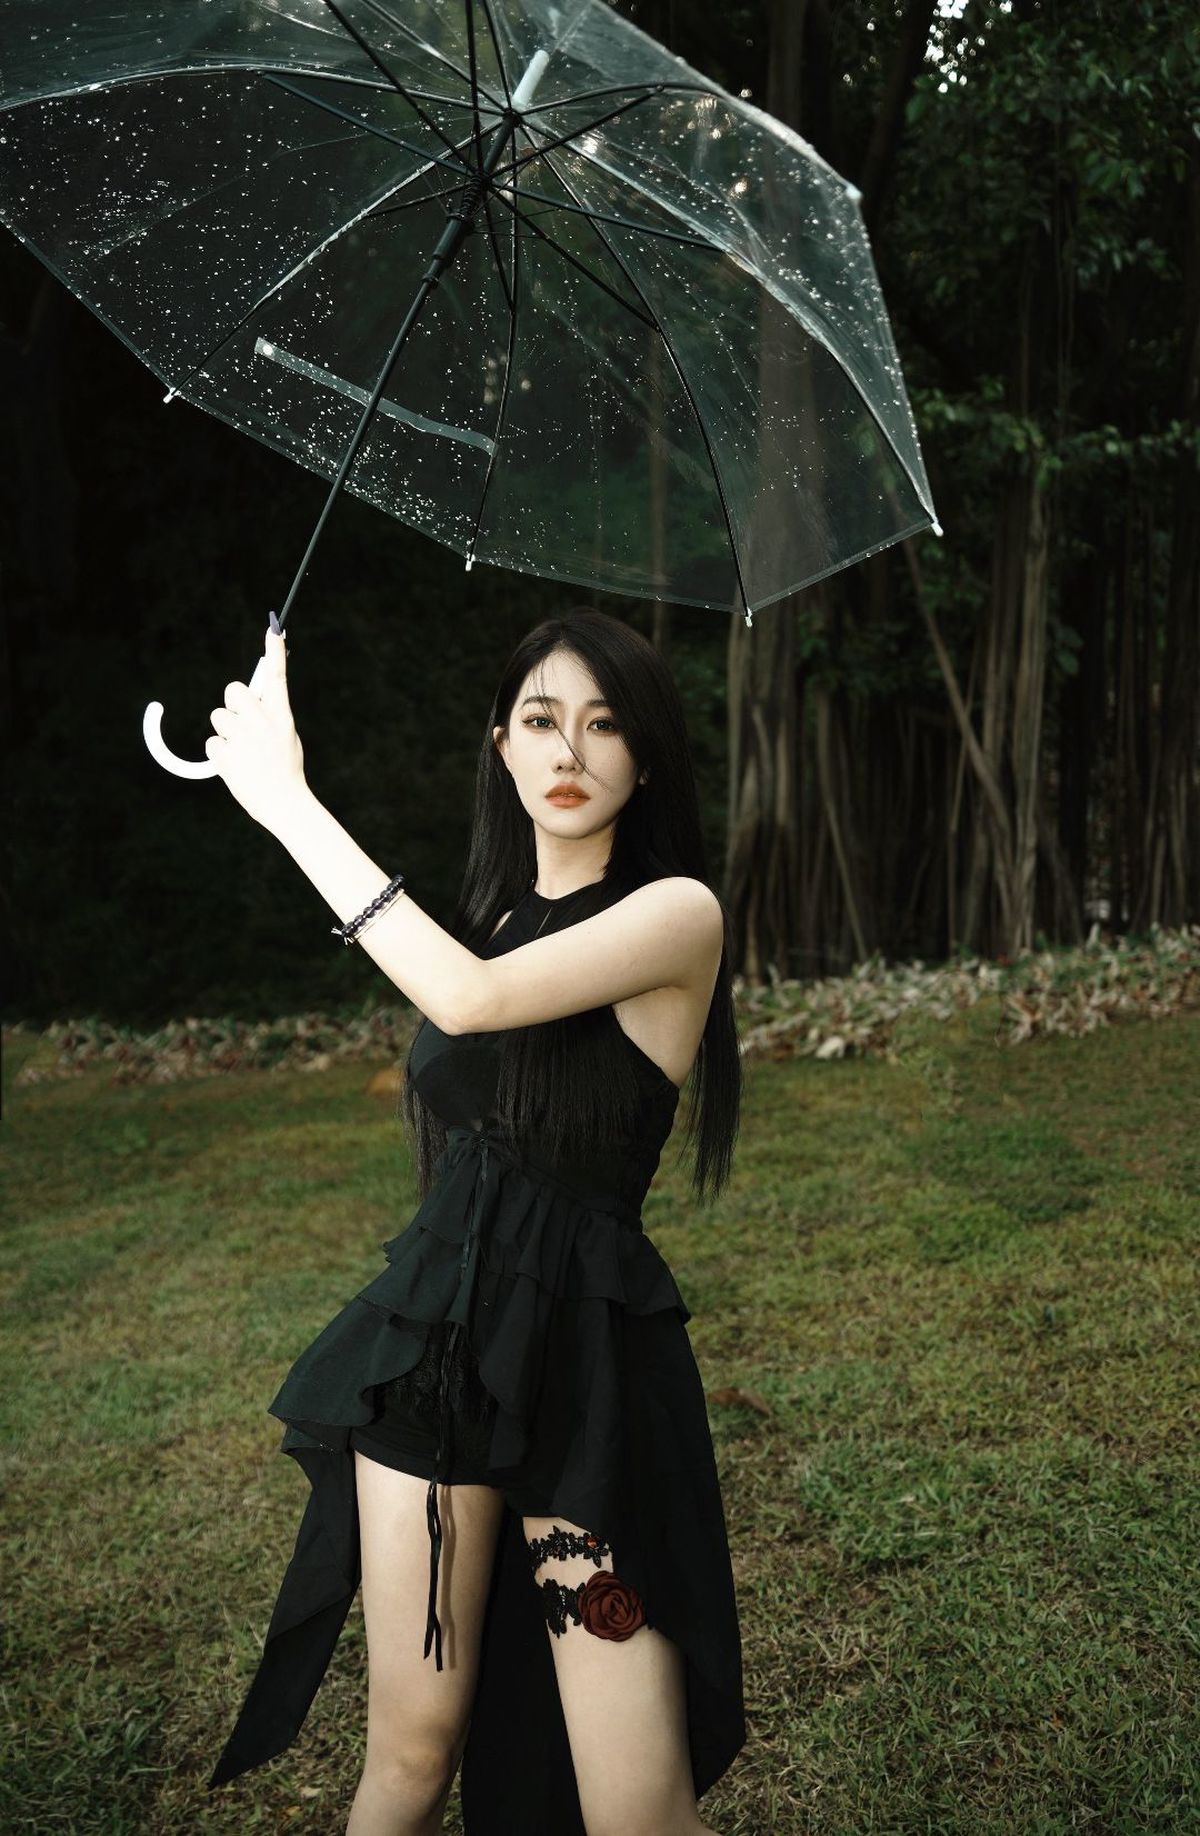 一个穿黑色连衣裙的女人拿着一把伞